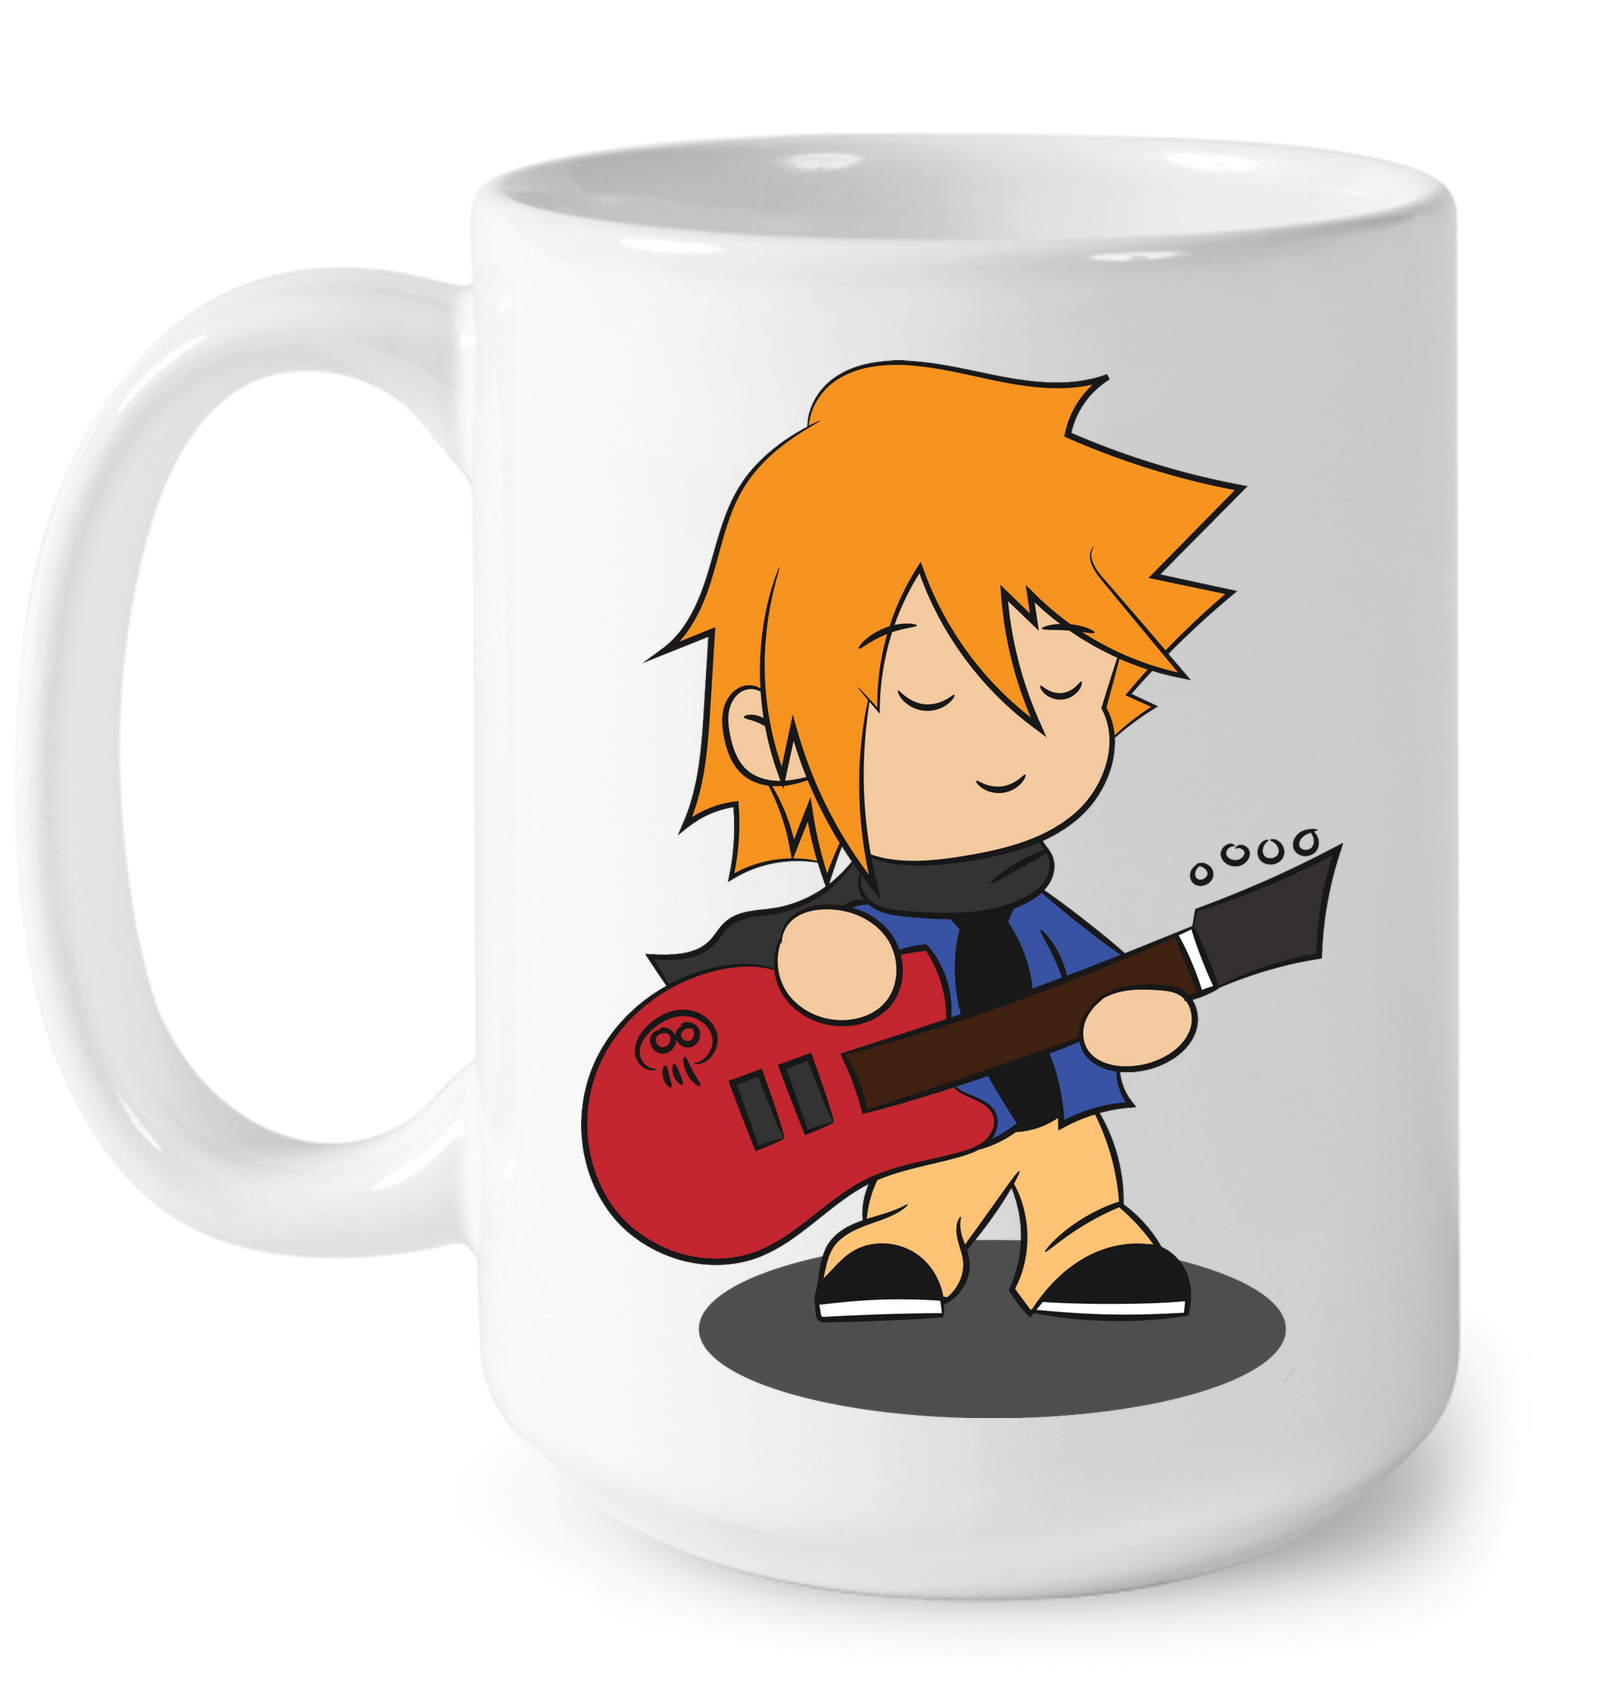 Boy with Guitar - Ceramic Mug